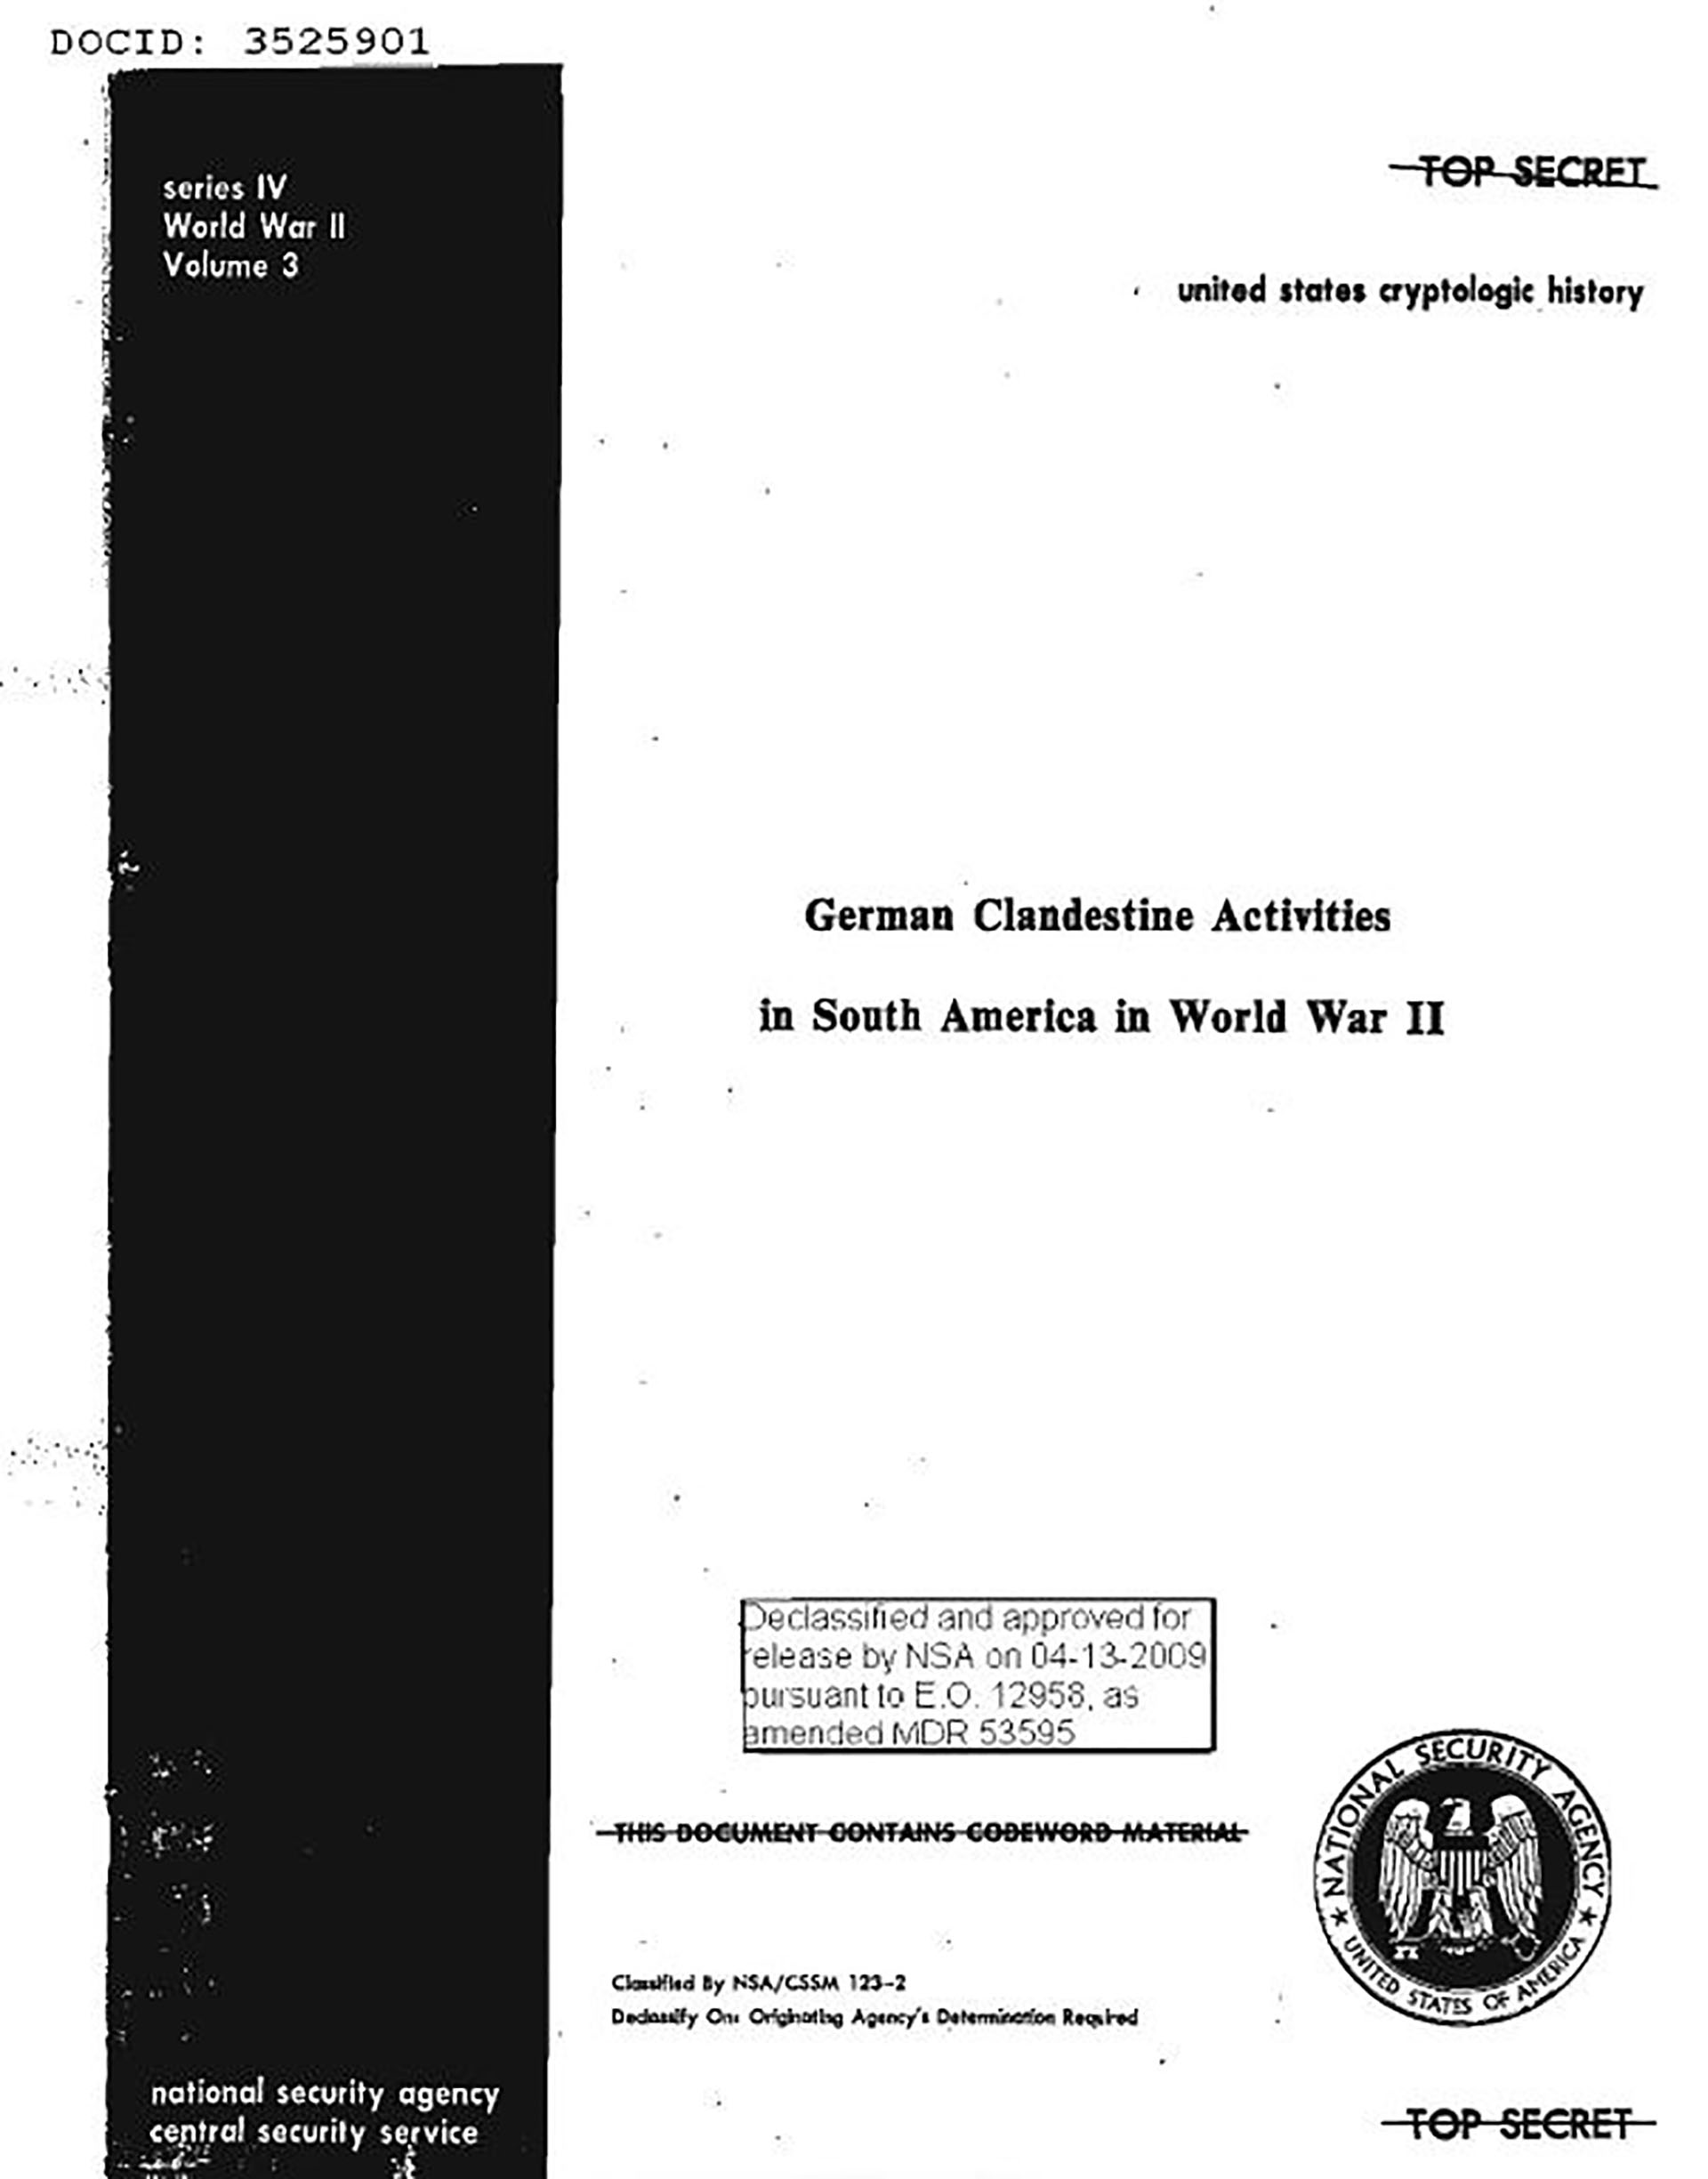 En 2009 se desclasificó un documento “ultra secreto” de la Agencia de Seguridad Nacional de los Estados Unidos (NSA) titulado “Actividades clandestinas alemanas en Sudamérica durante la Segunda Guerra Mundial”, donde el historiador del espionaje David P. Mowry desmenuza la Operación Bolívar